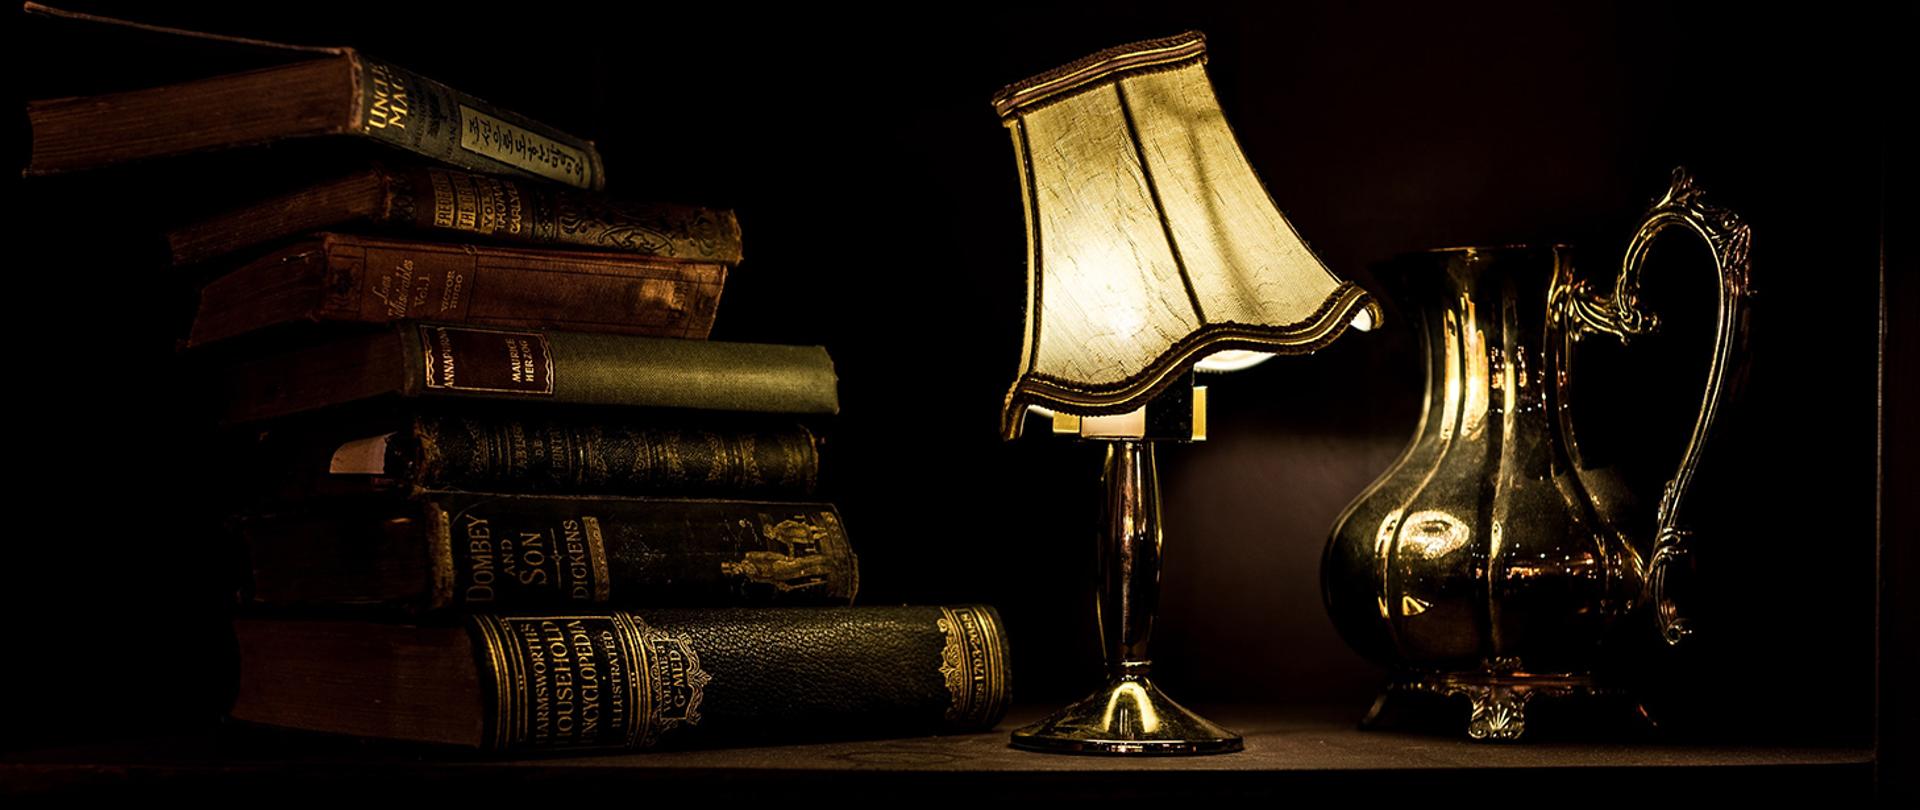 Baner przedstawiający książki, lampę oraz dzban
